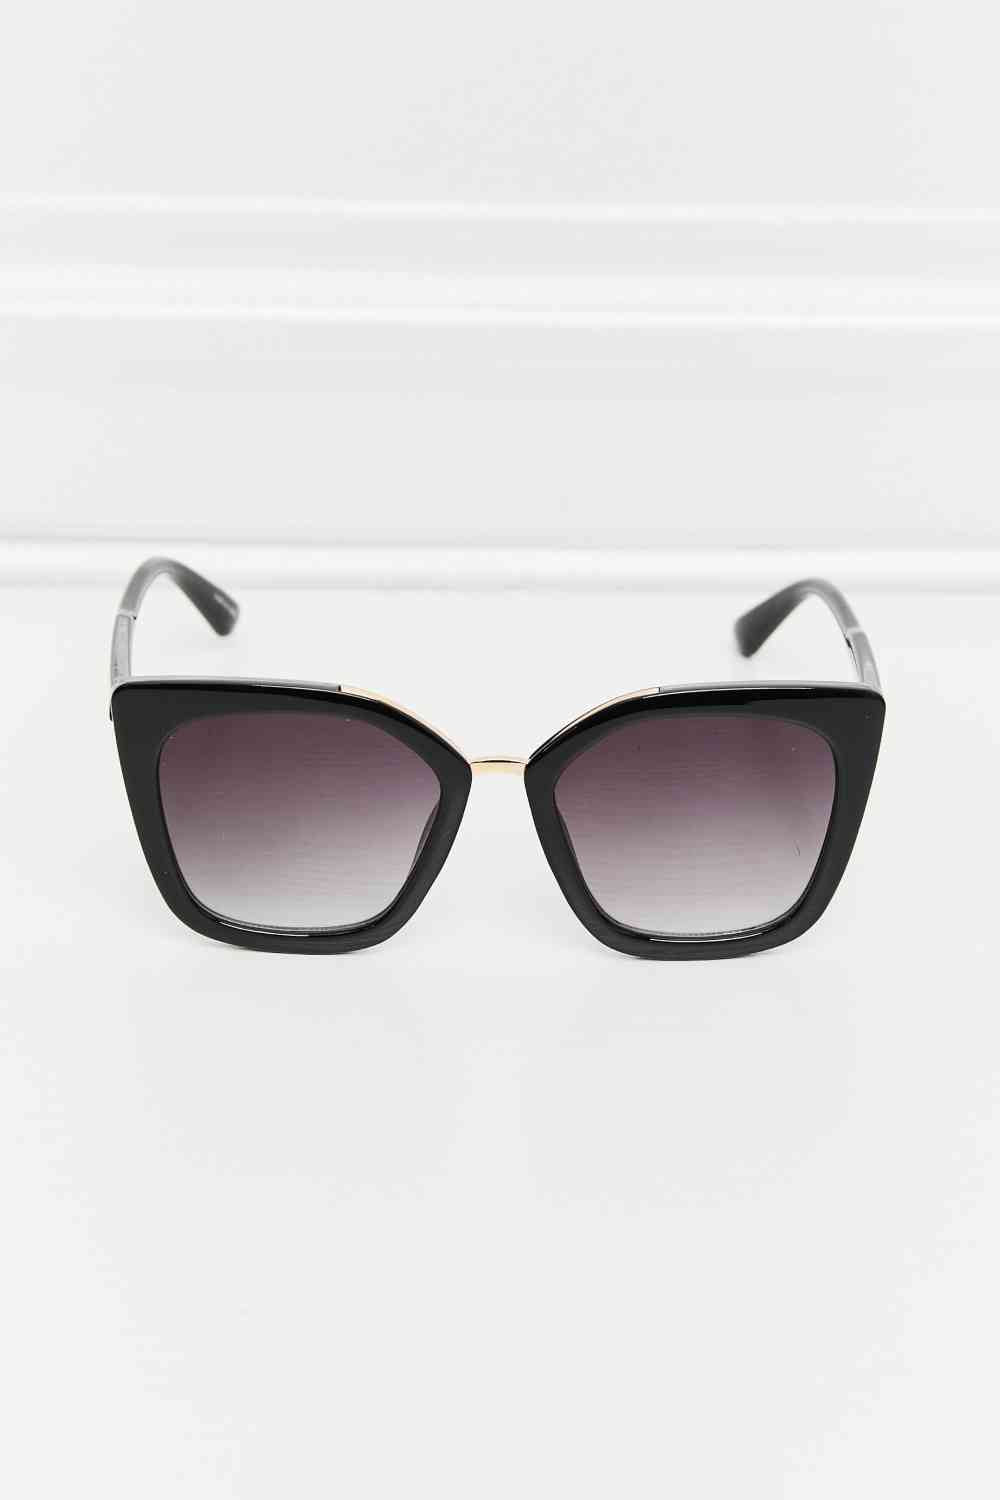 RegalGaze Sunglasses